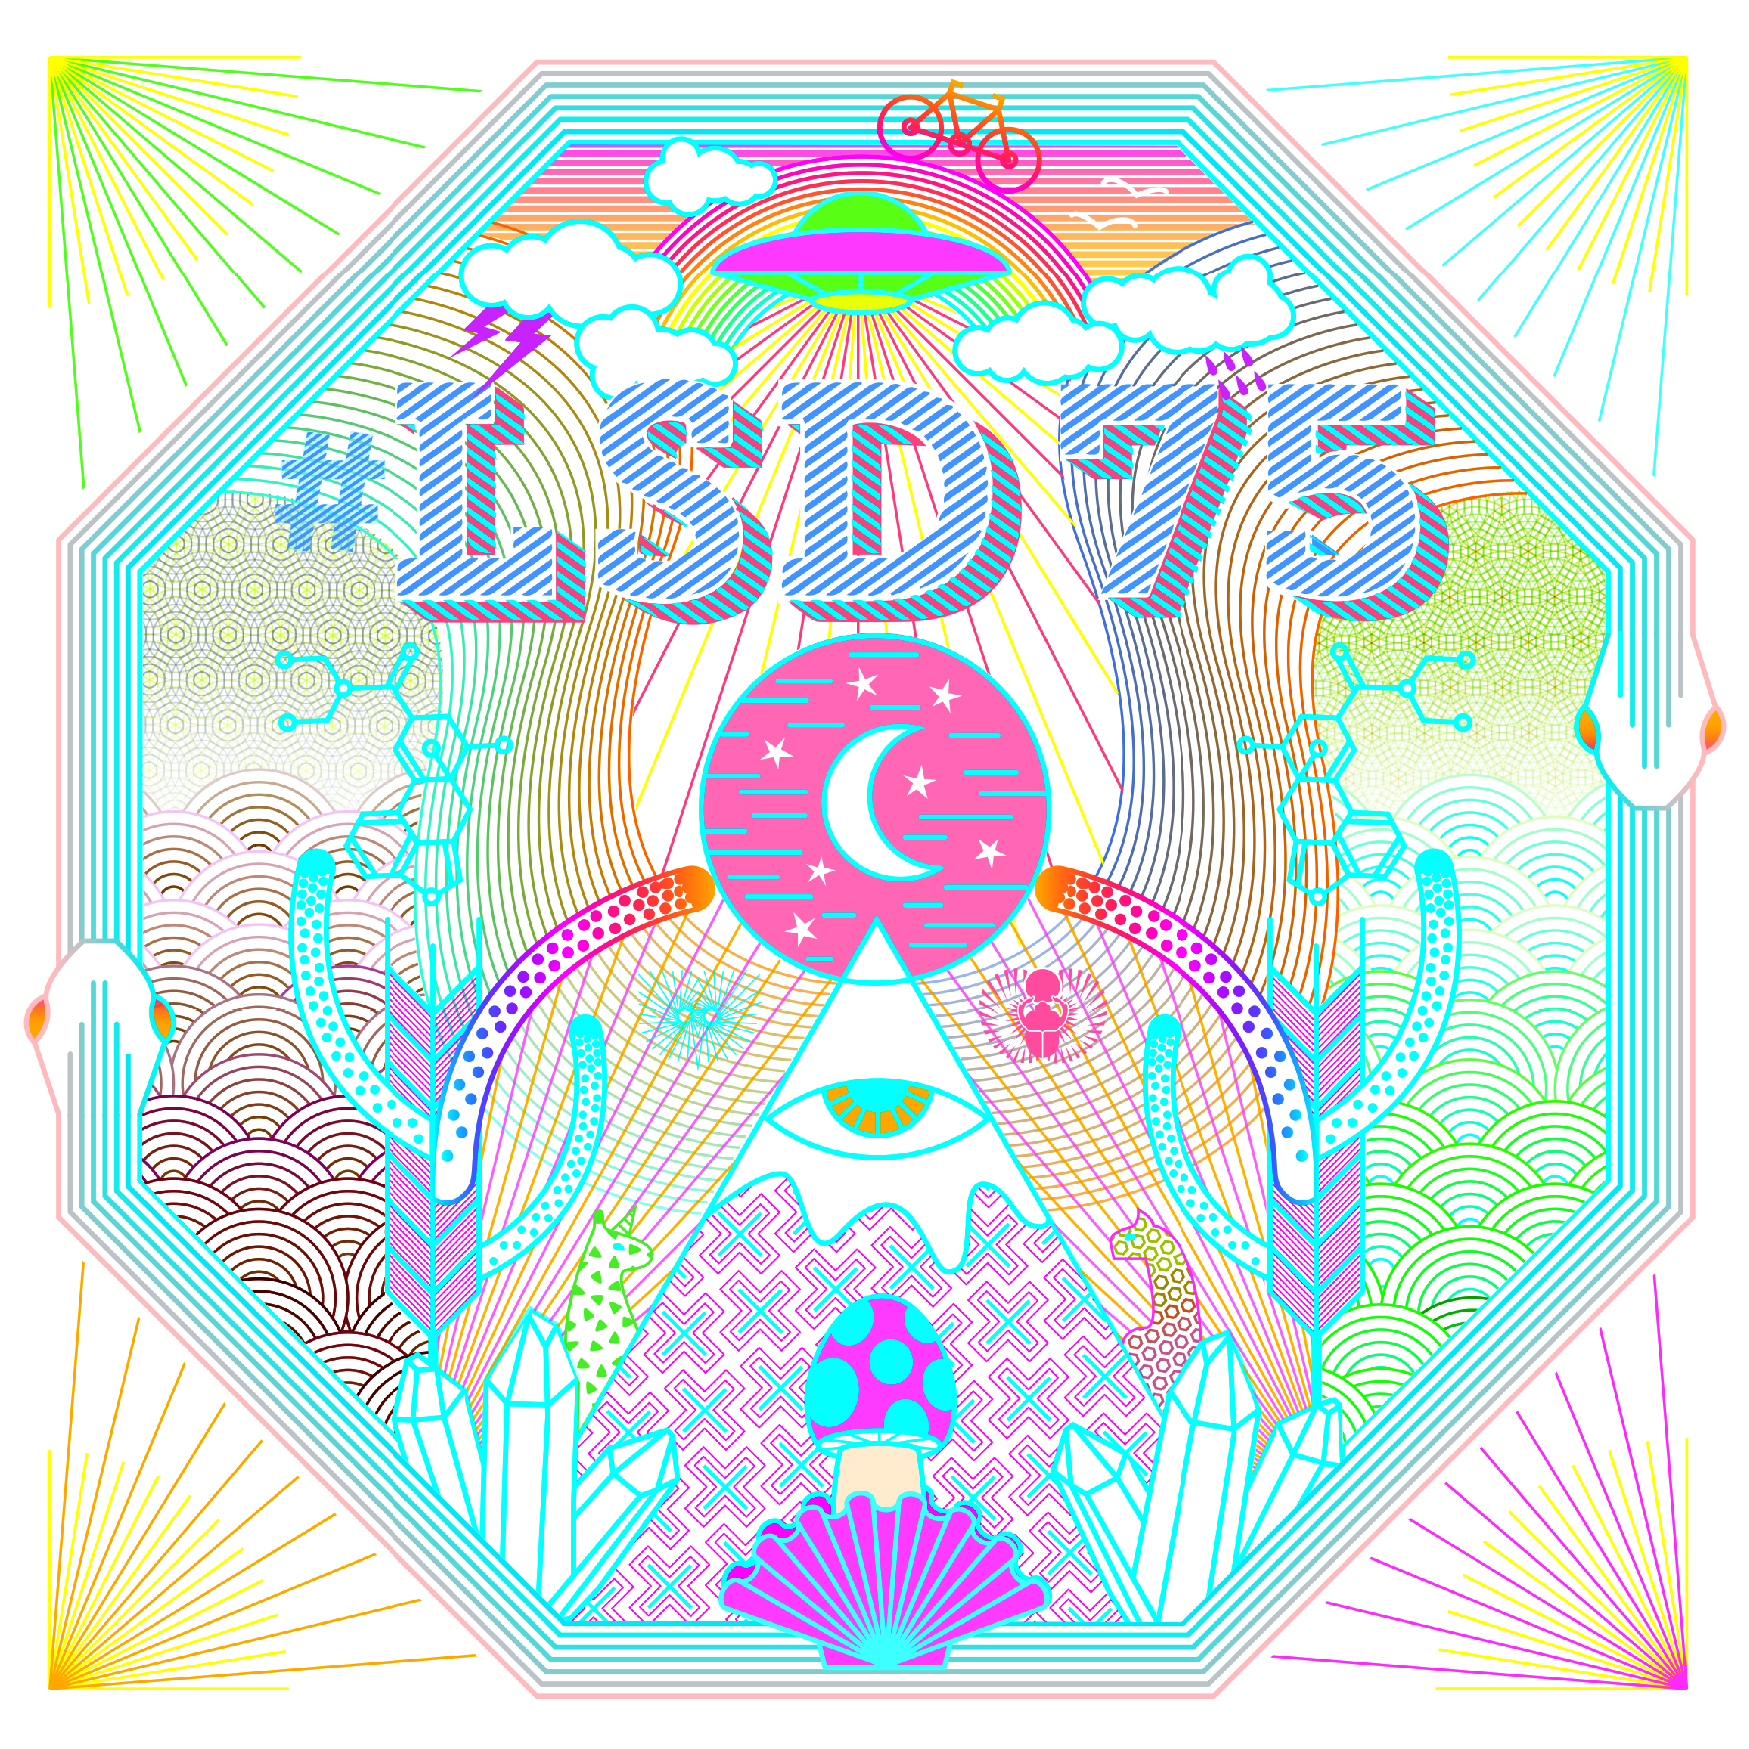 LSD 75